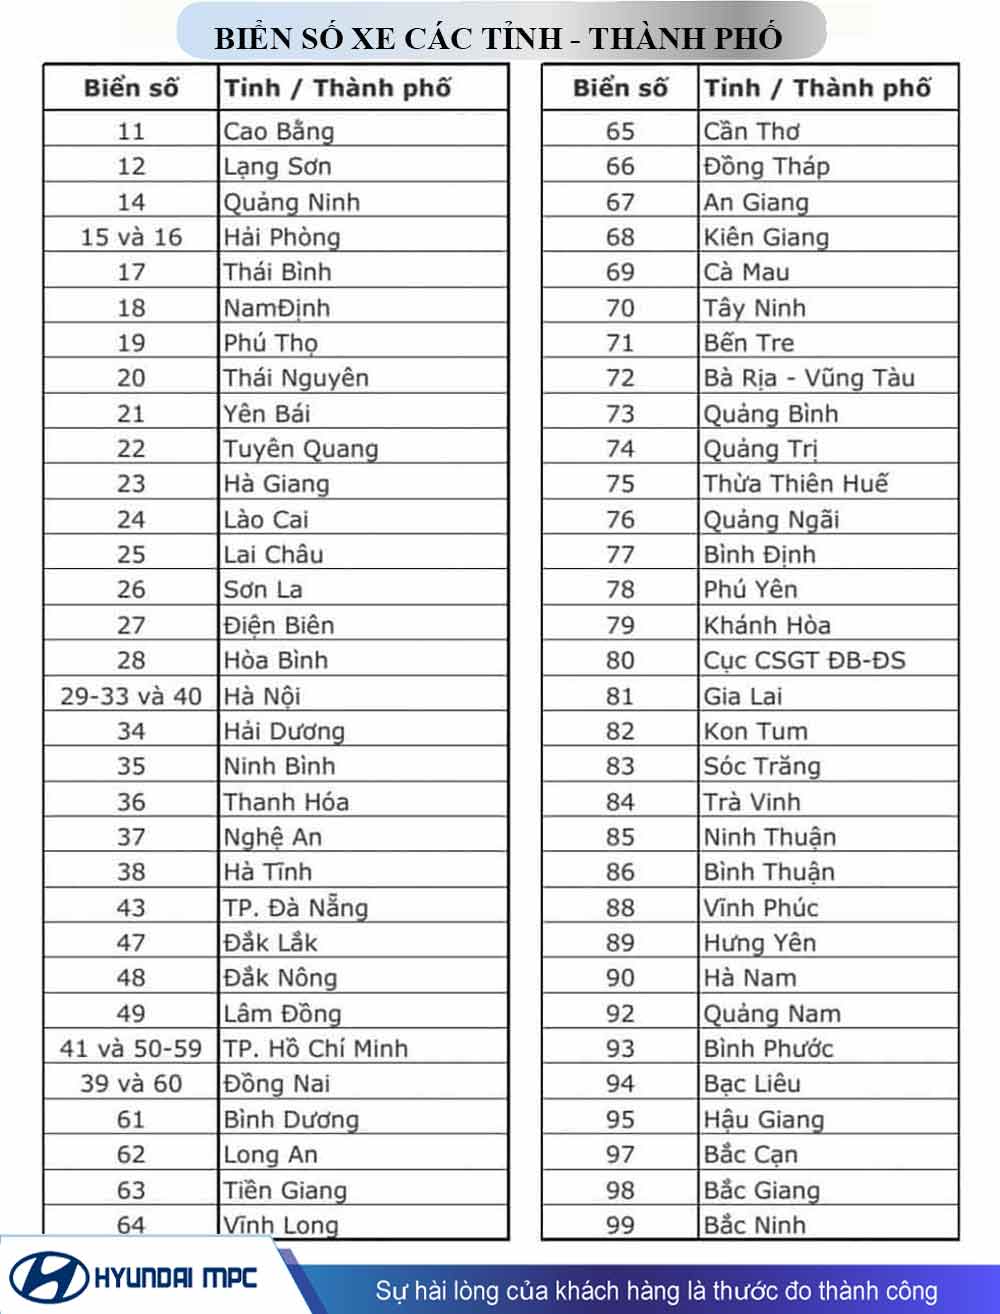 Biển số xe 79 là của tỉnh nào nước ta - Khám phá chi tiết về Khánh Hòa